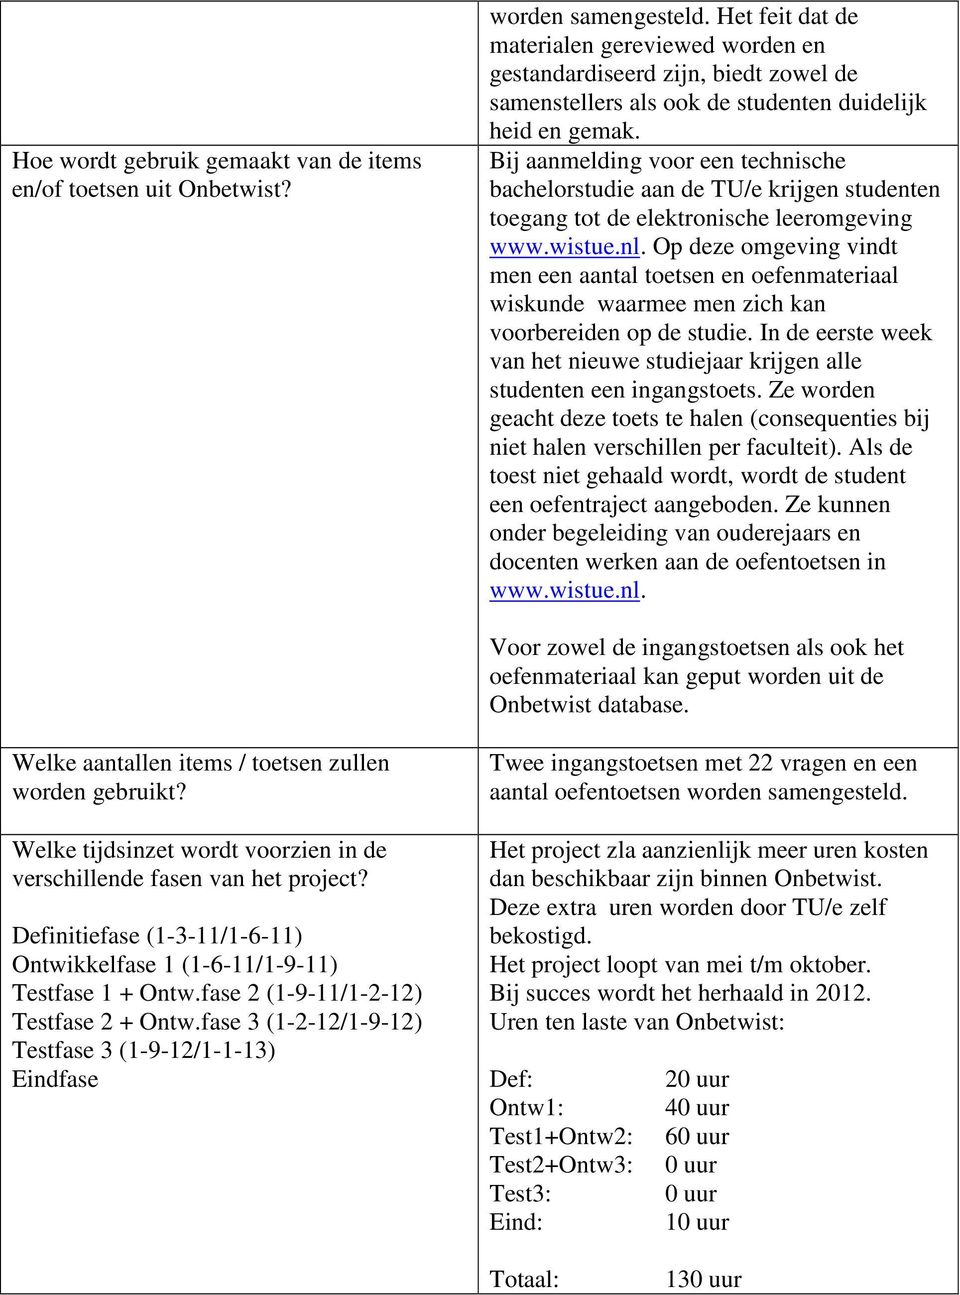 Bij aanmelding voor een technische bachelorstudie aan de TU/e krijgen studenten toegang tot de elektronische leeromgeving www.wistue.nl.